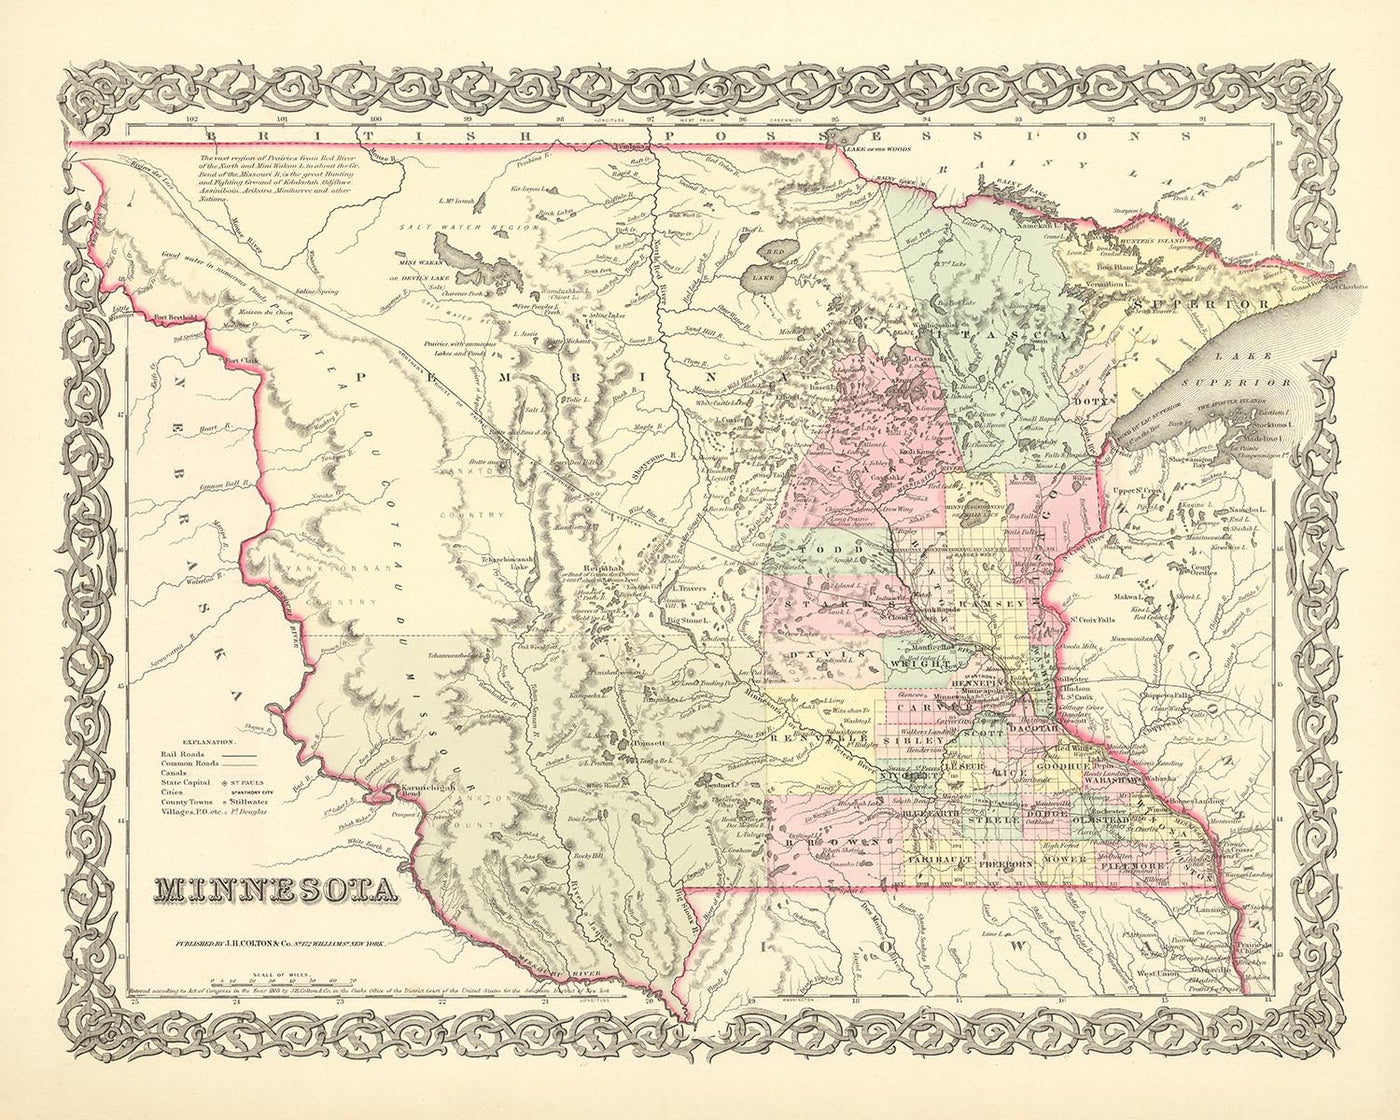 Ancienne carte du Minnesota par JH Colton, 1856 : Saint-Paul, Saint-Anthony, Stillwater, Mendota et Wabasha